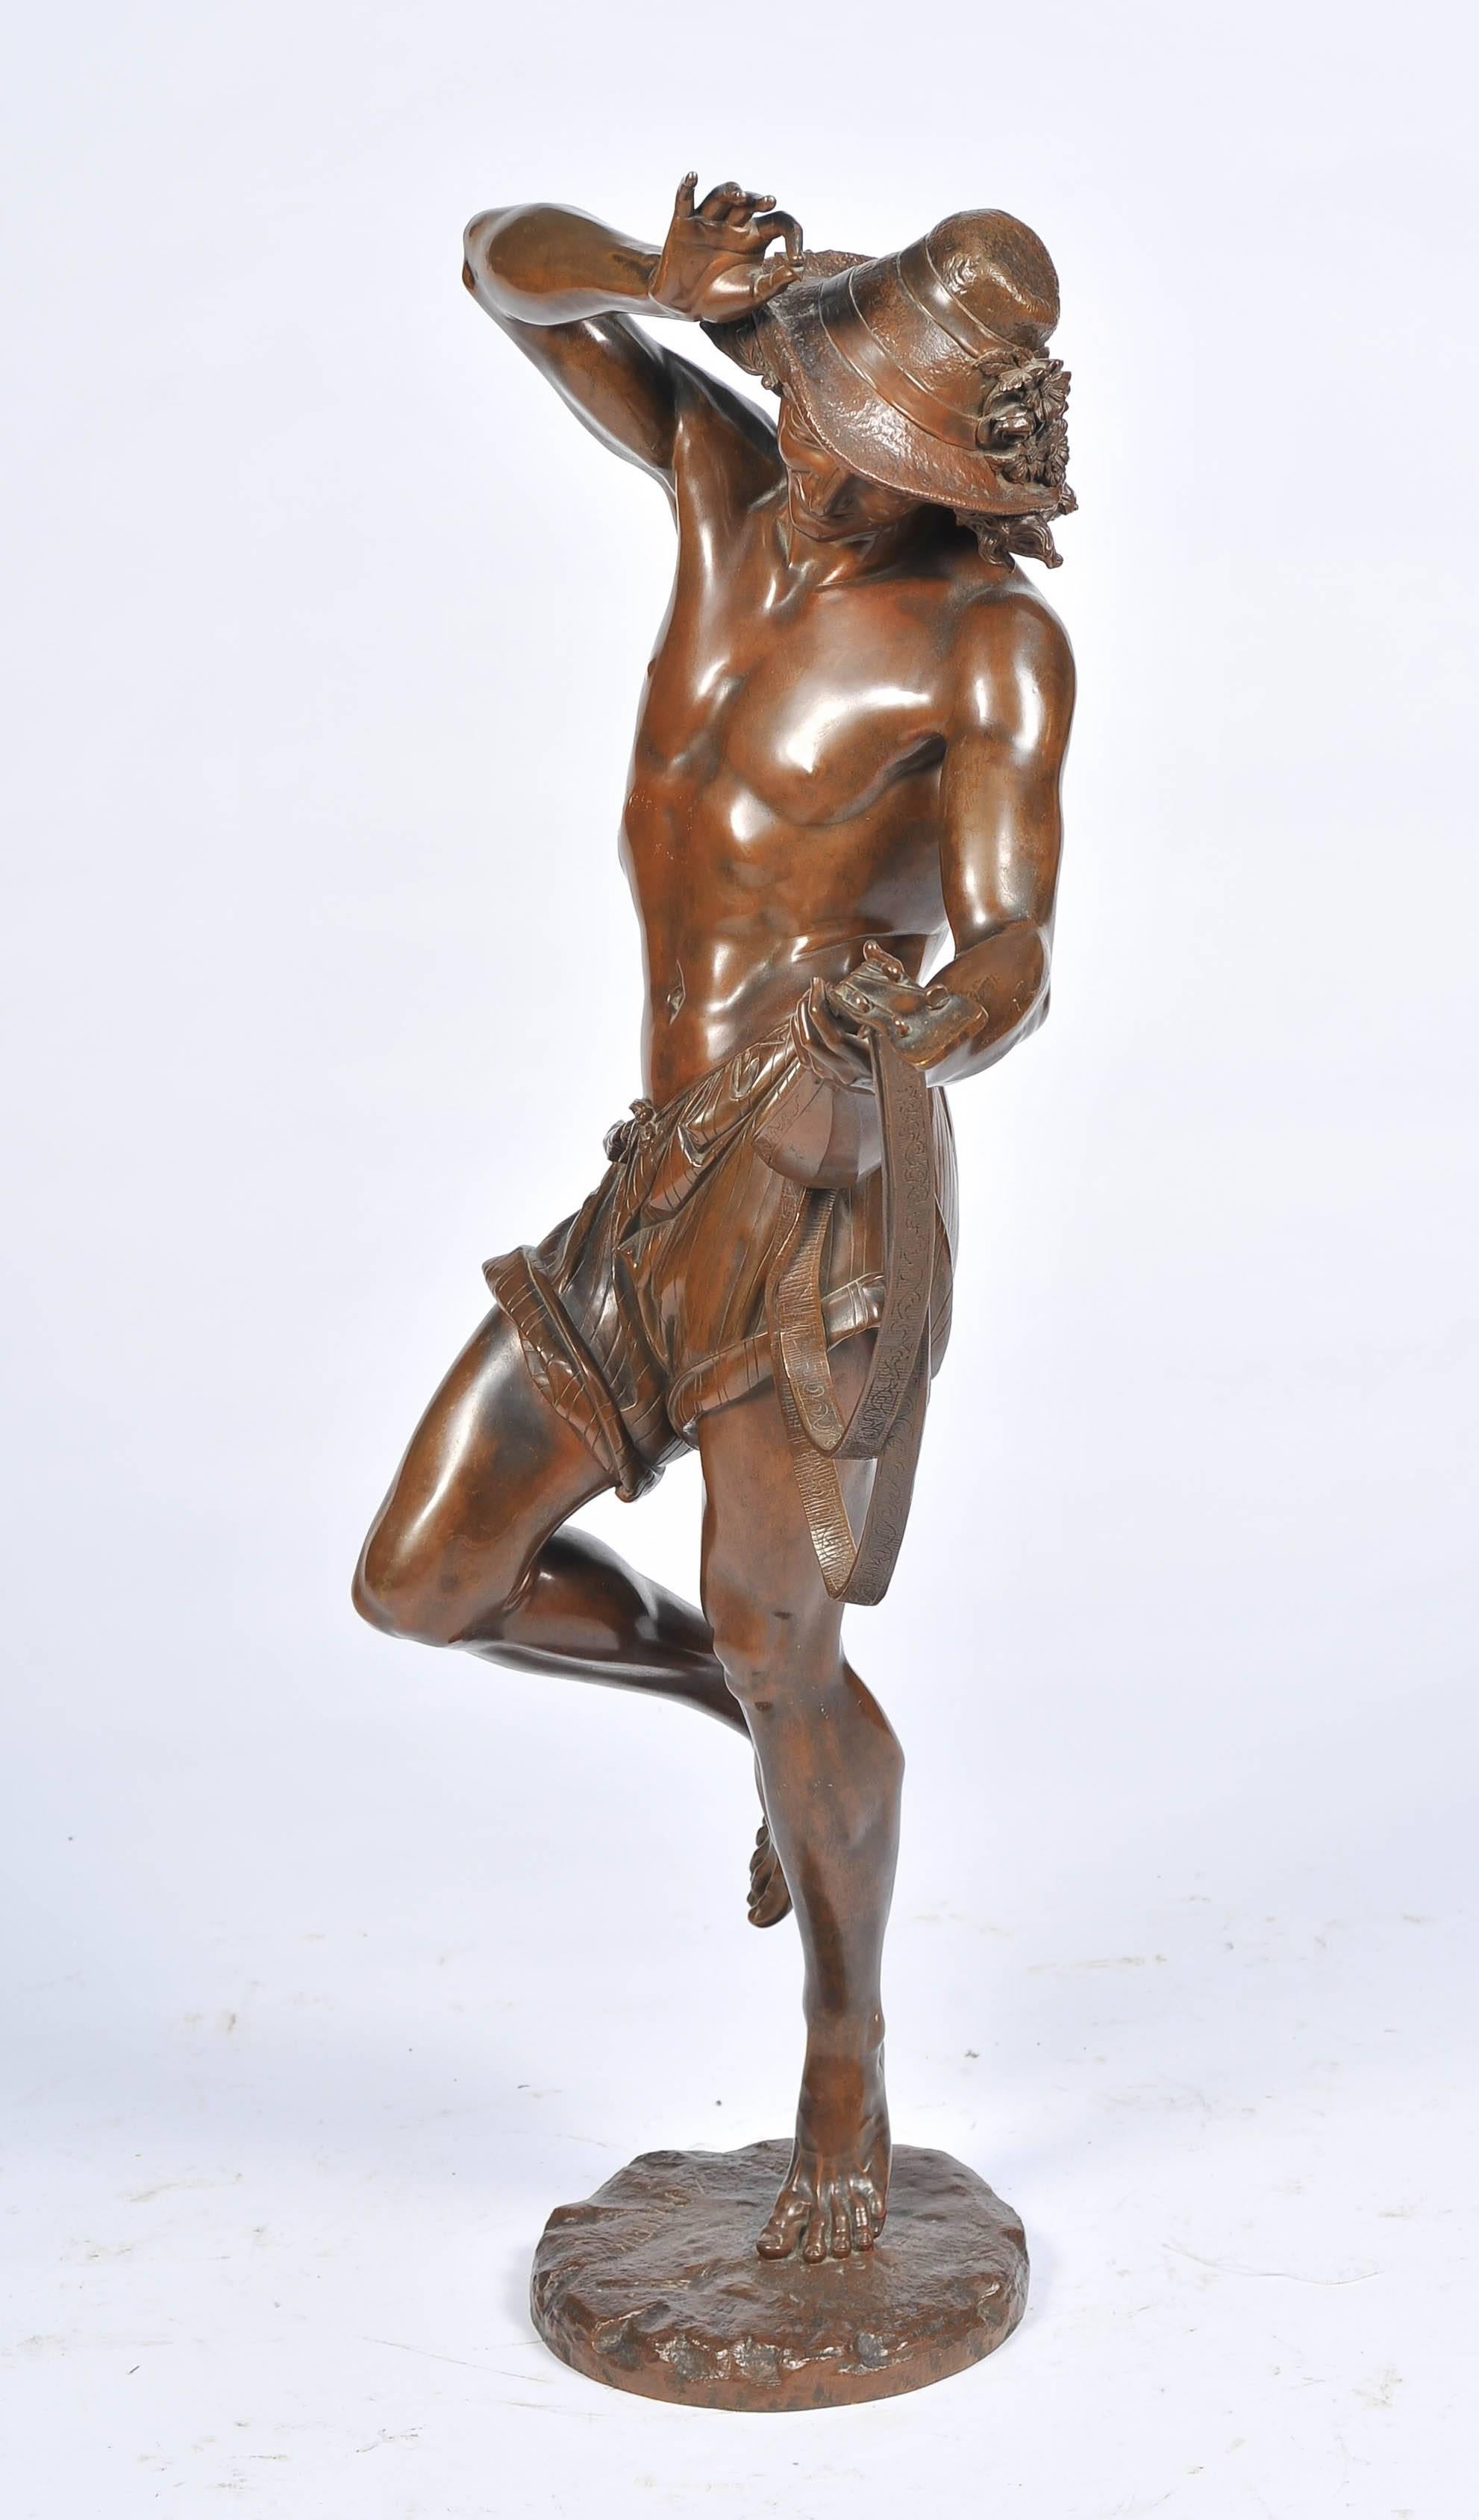 Eine große und beeindruckende Bronzestatue aus dem 19. Jahrhundert, die eine neapolitanische Tänzerin darstellt, die eine Mandoline spielt.
Mit einer wunderbaren Patina und signiert; Ernest Carrier de Belleuse (Französisch, 1824-1887) Bronze